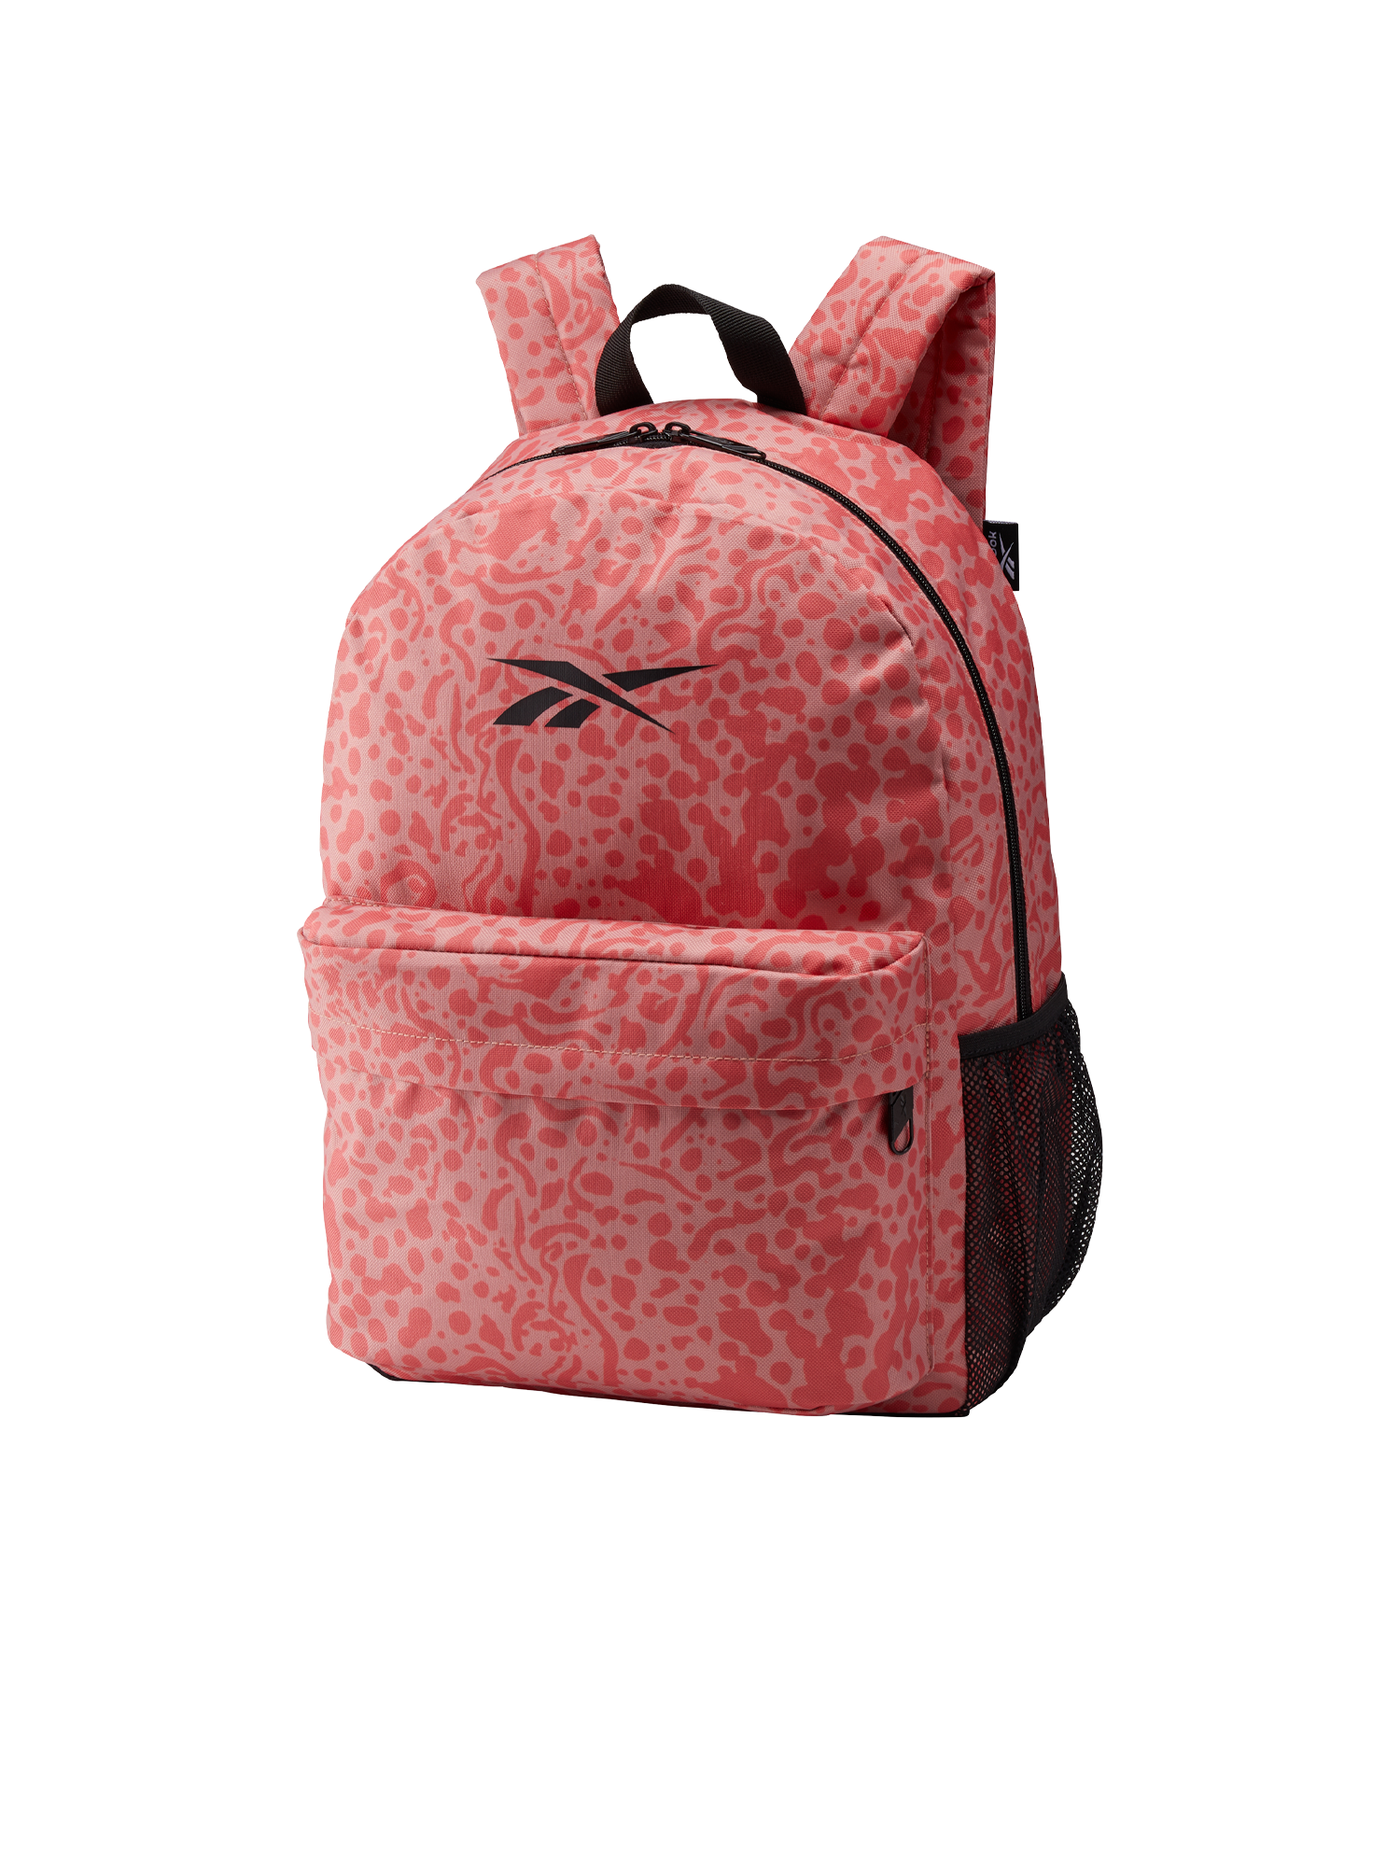 Backpack - Modern Safari